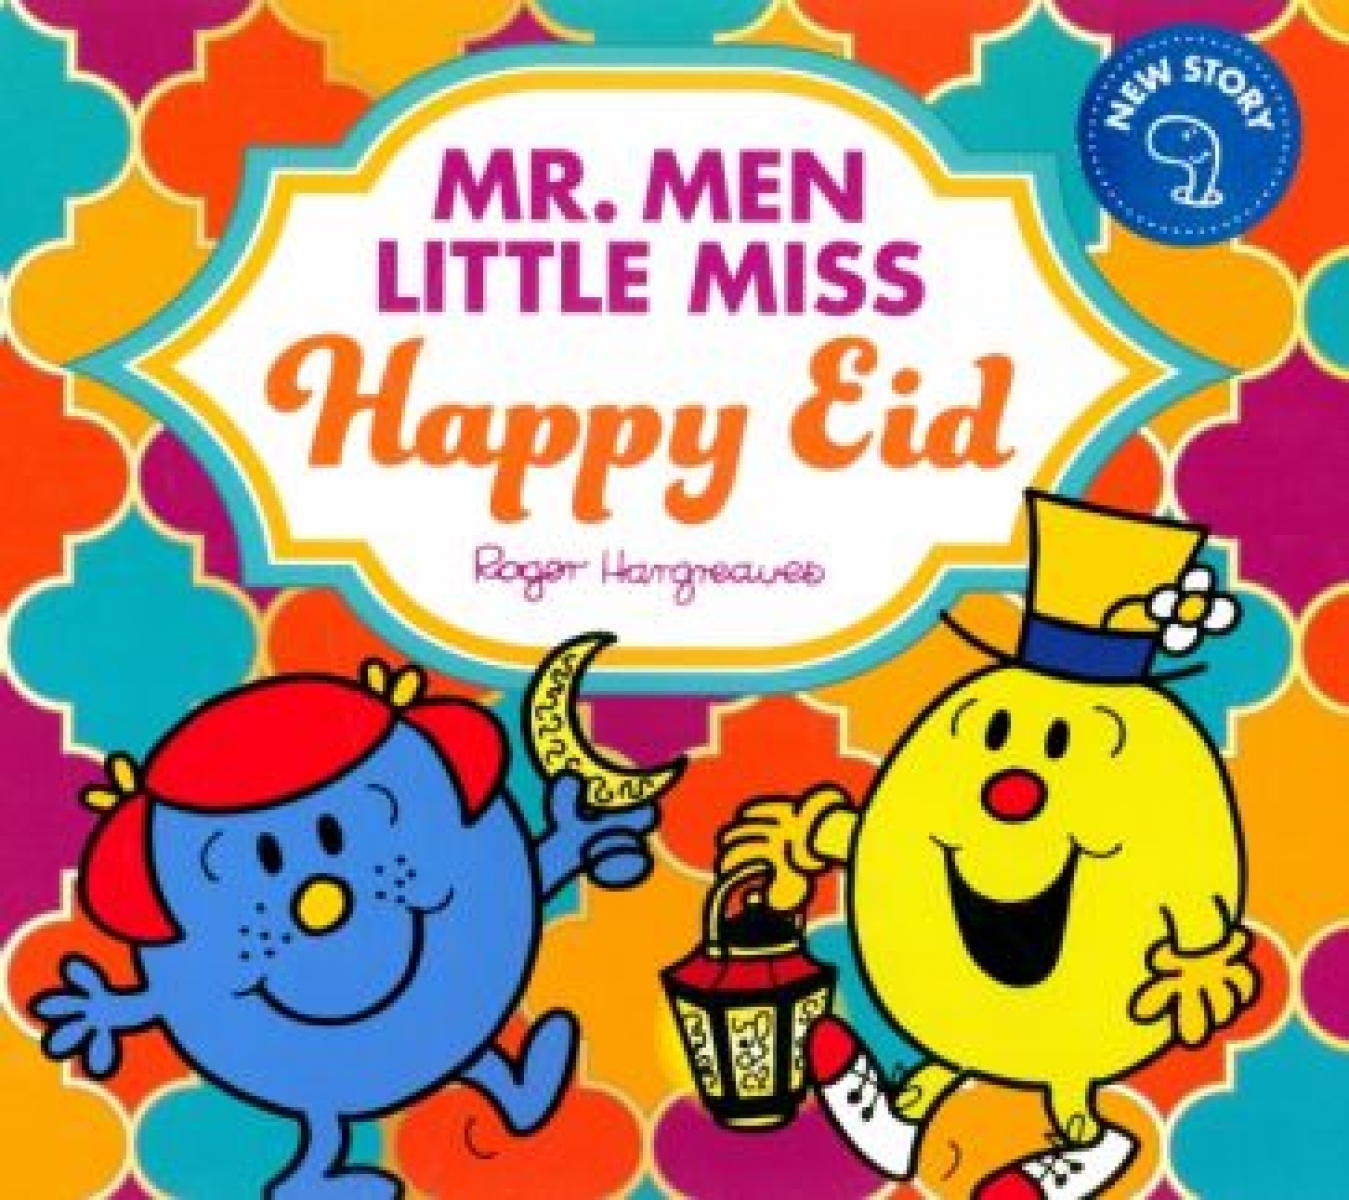 Hargreaves Adam Mr. Men Little Miss Happy Eid 